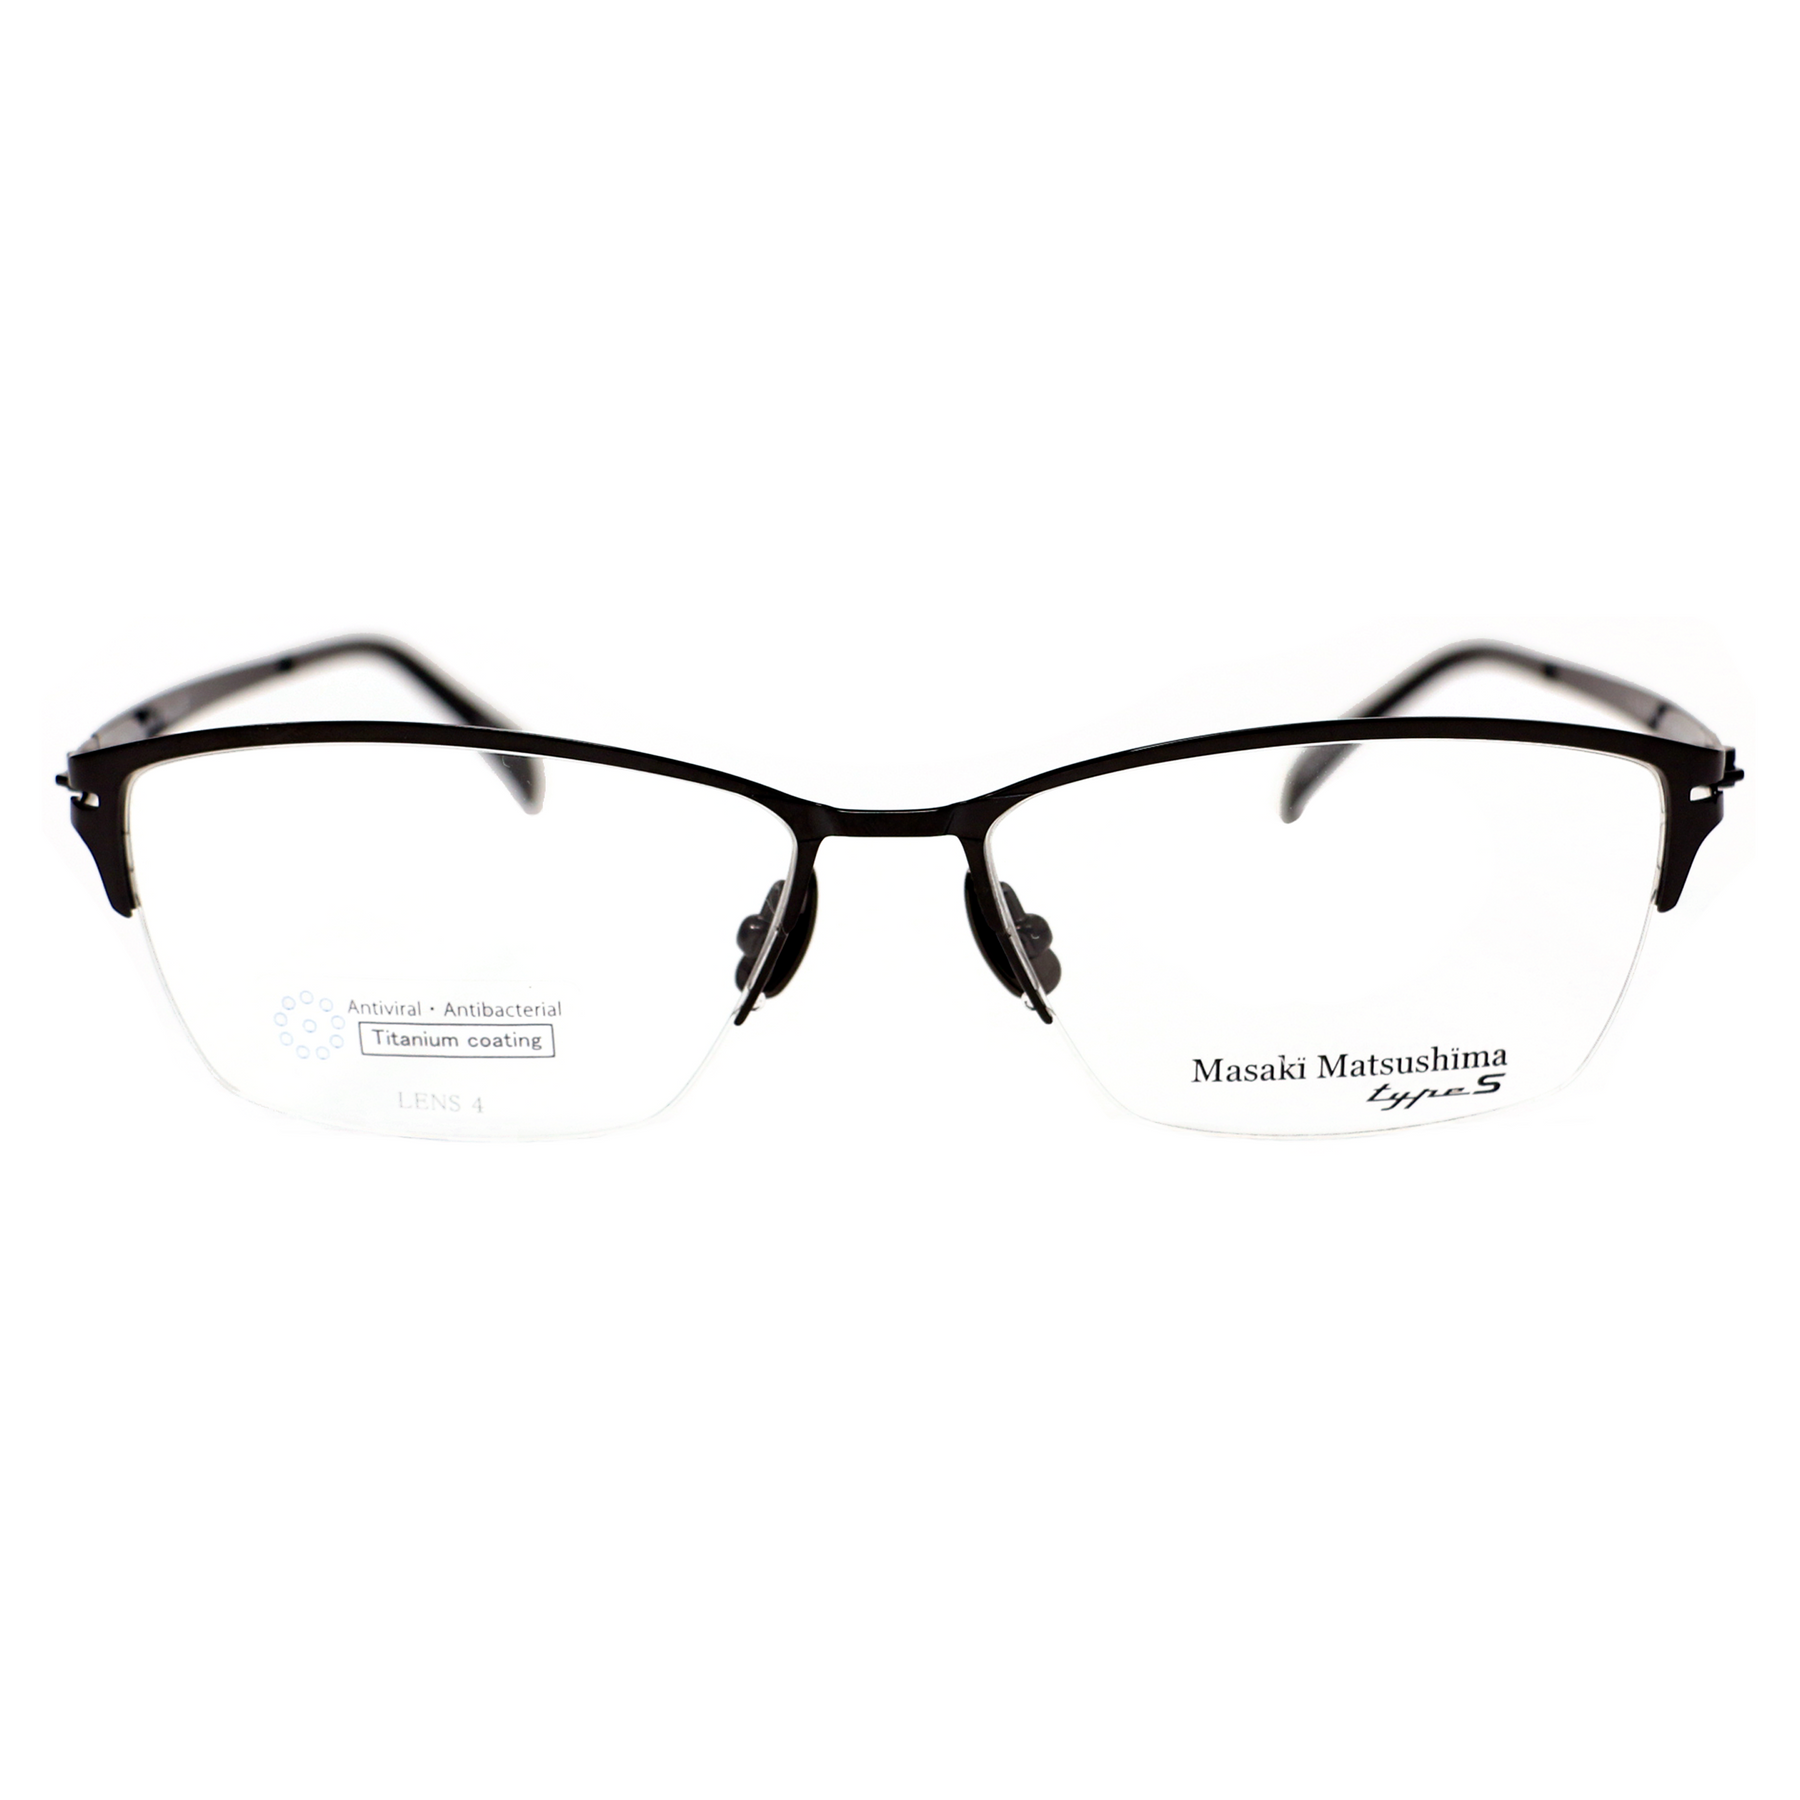 Masaki Matsushima Eyeglasses with AntiViral Titanium Coating | Raylite ...